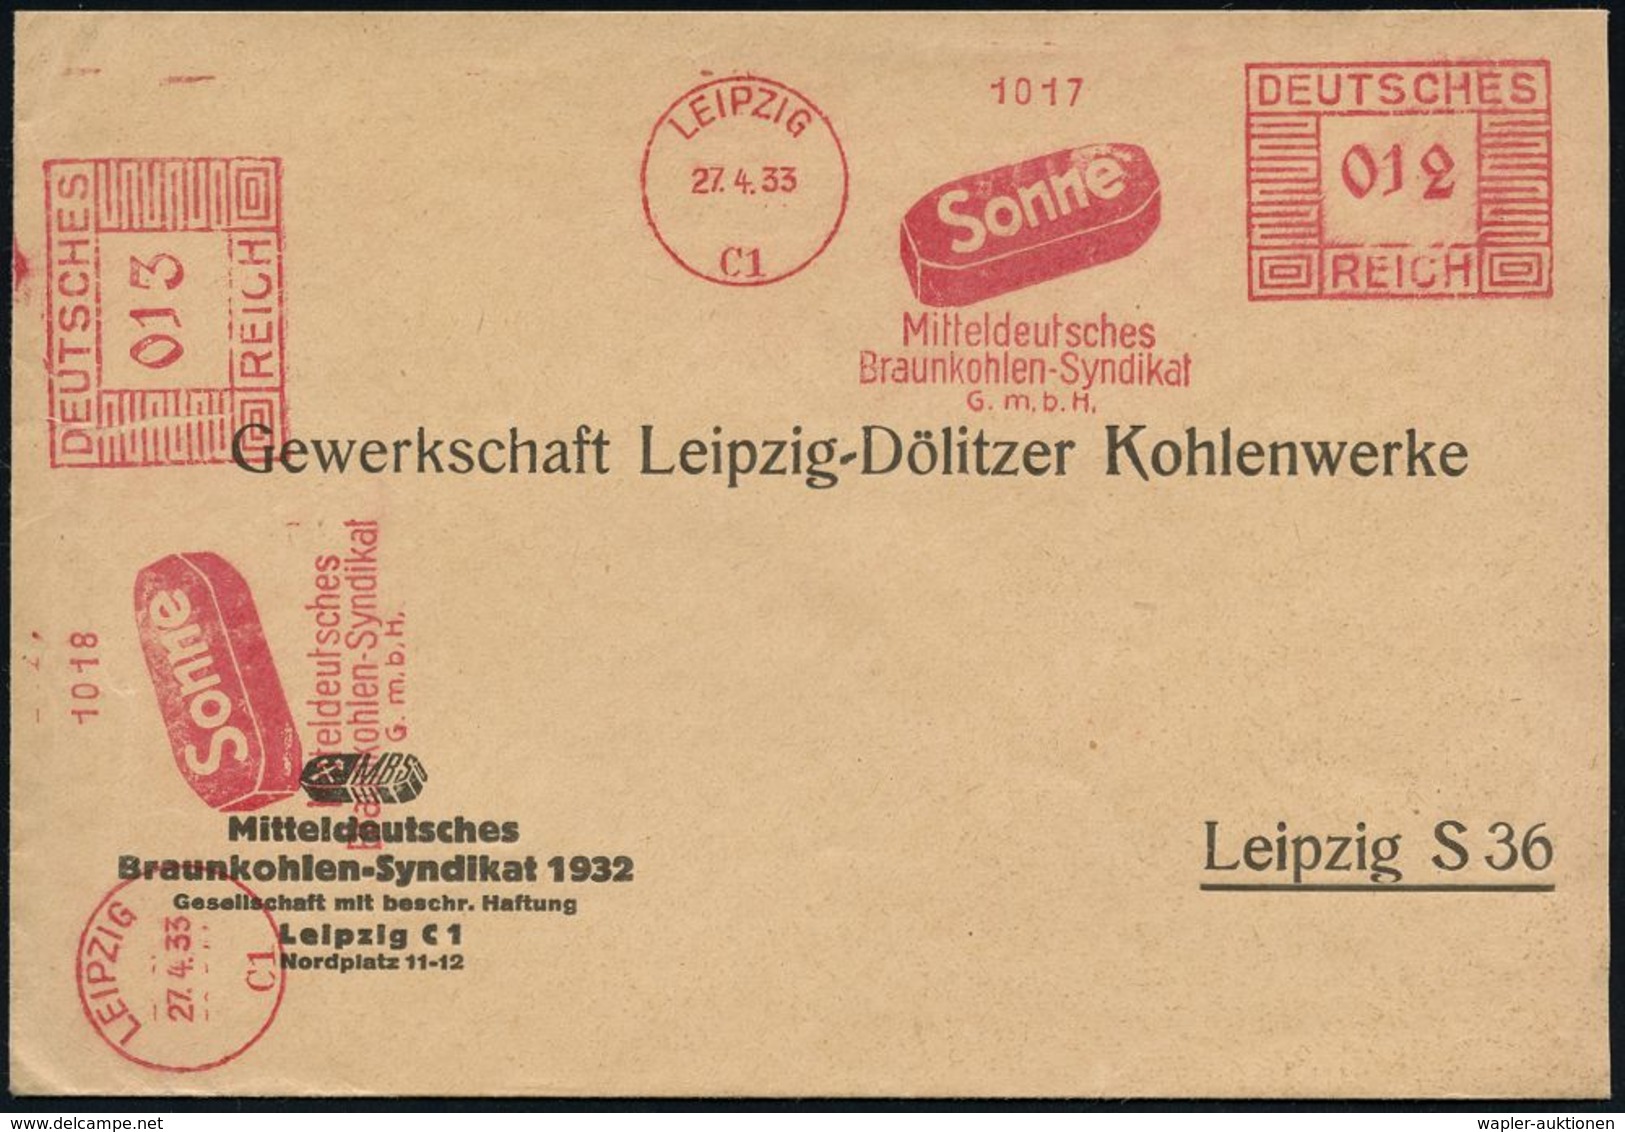 KOHLE / STEIN- & BRAUNKOHLE / KOKS : LEIPZIG/ C1/ Sonne/ Mitteldeutsches/ Braunkohlen-Syndikat/ GmbH 1933 (27.4.) AFS 01 - Other & Unclassified